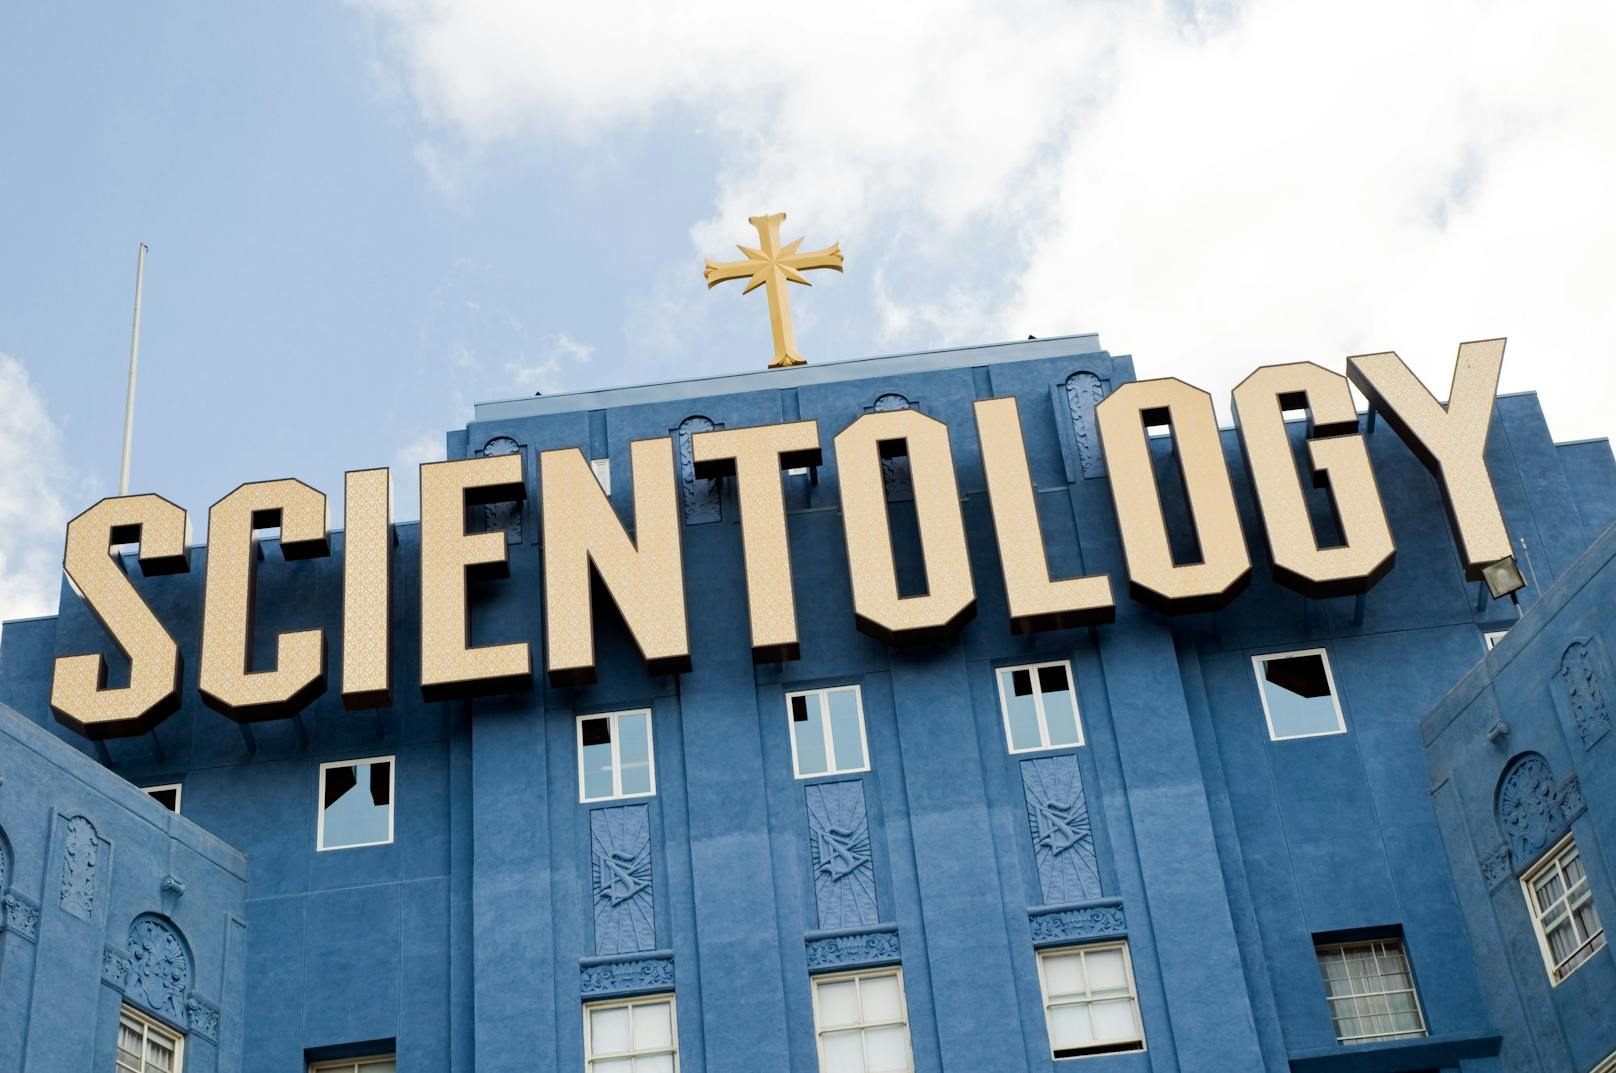 Scientology ködert jetzt Jugendliche auf Tiktok